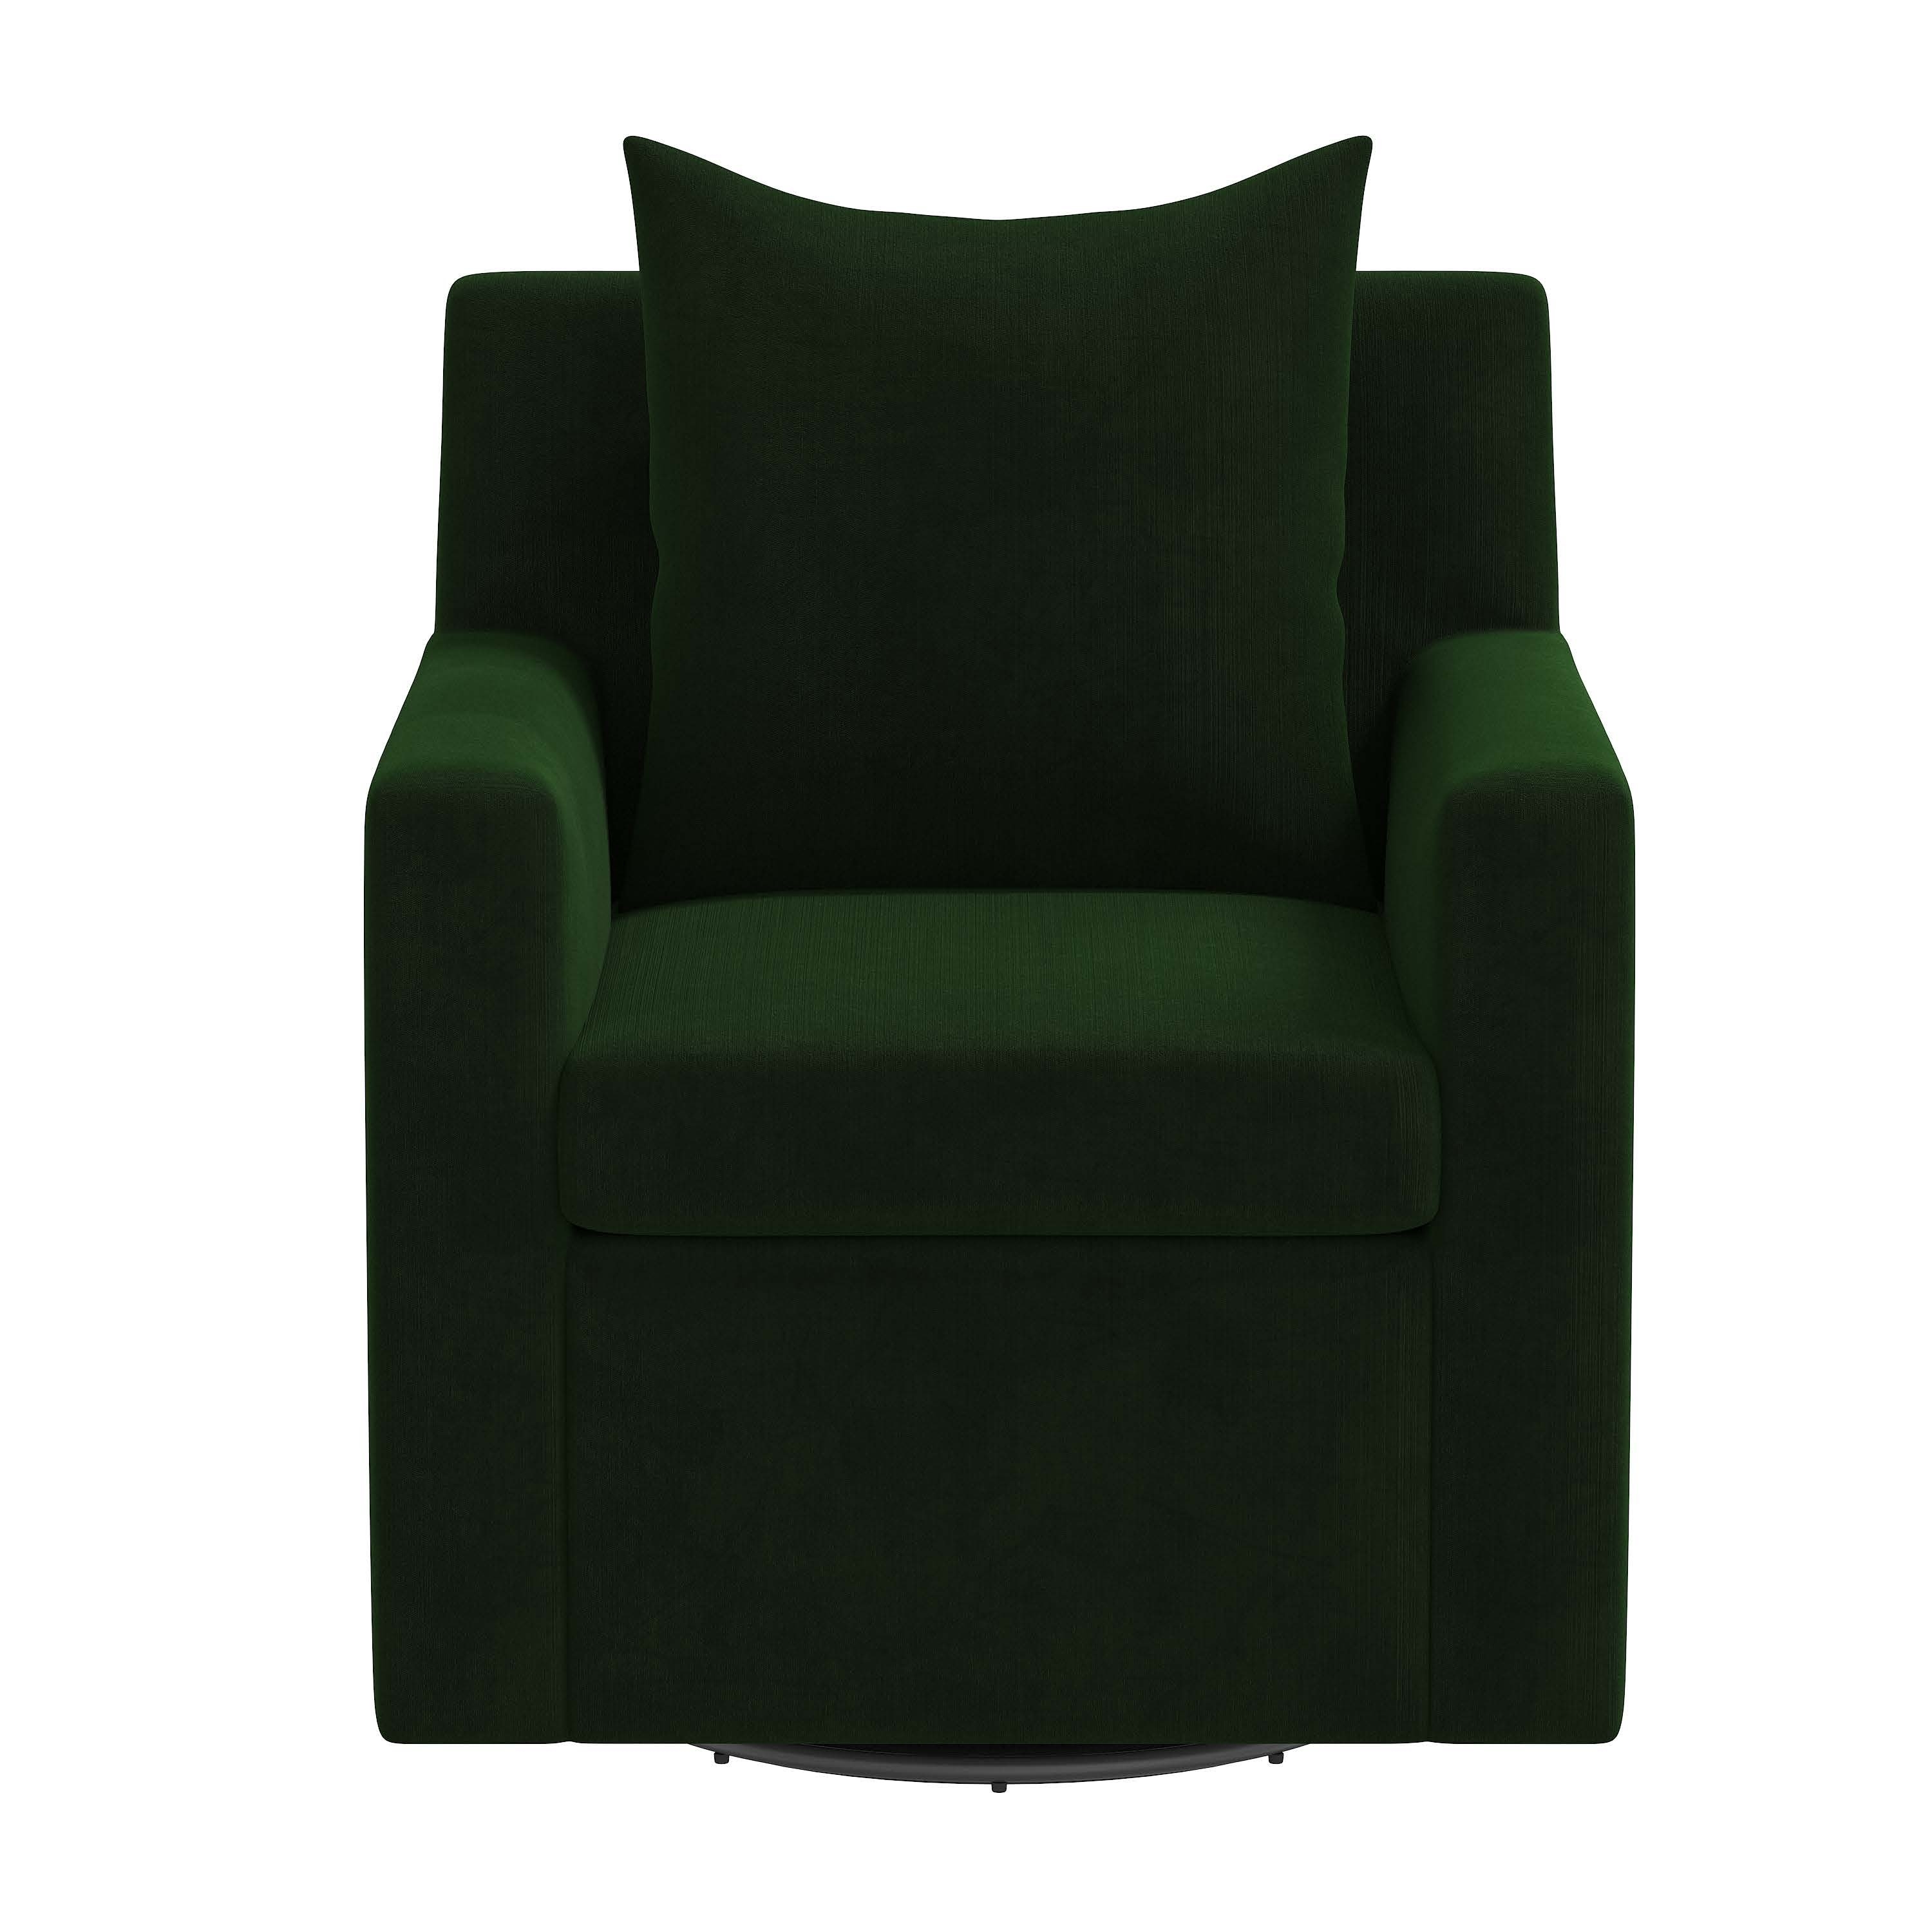 Elena Swivel Chair - Emerald Velvet - Image 1